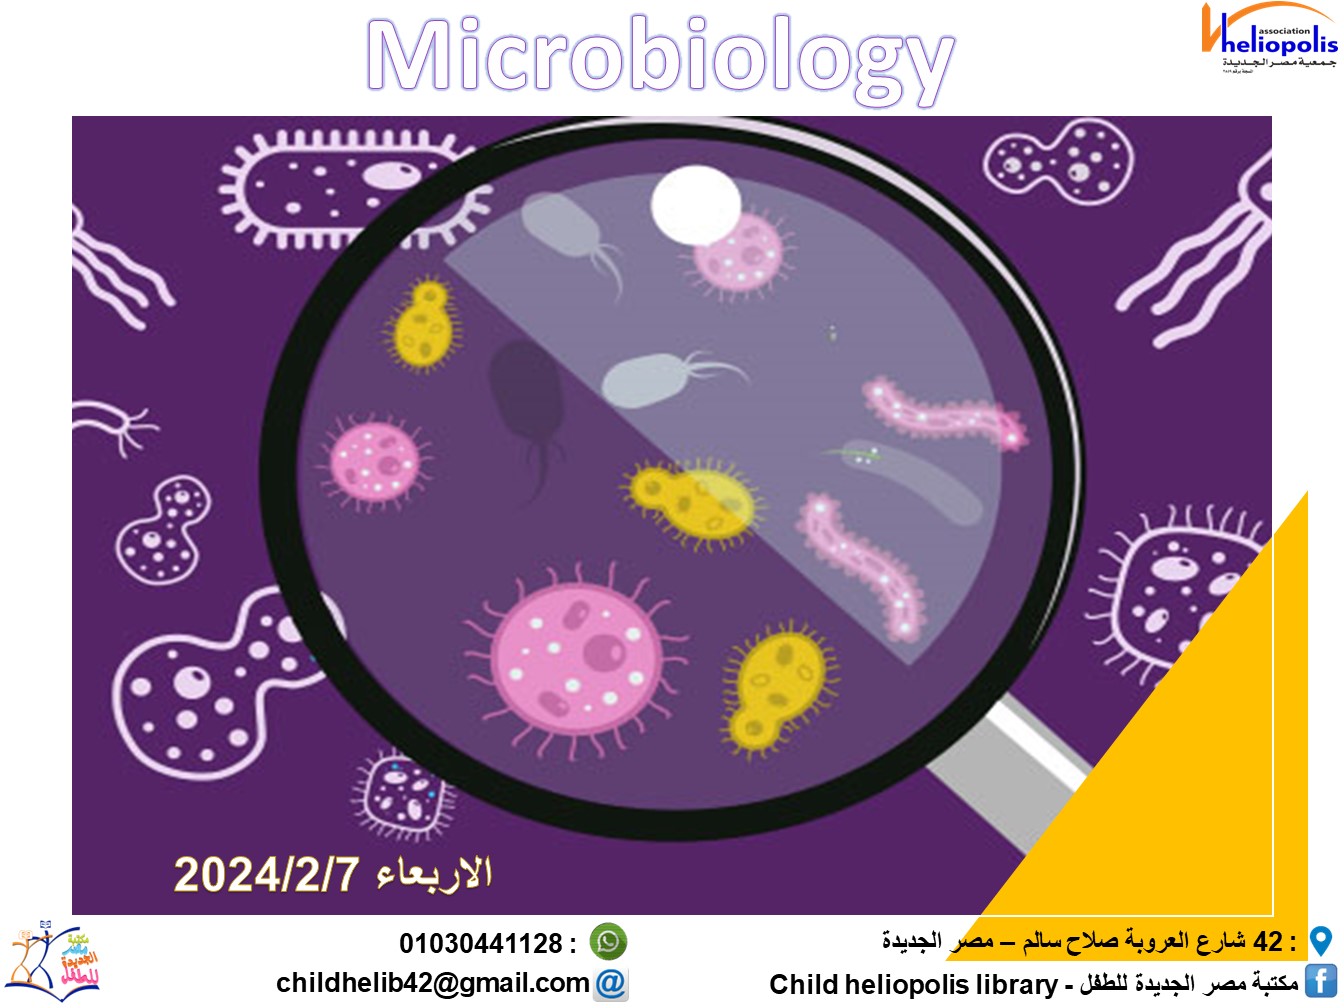 ورشة الماكروبيولوجى ورشة علمية عن مكونات الخلية والبكتريا تحت الميكروسكوب